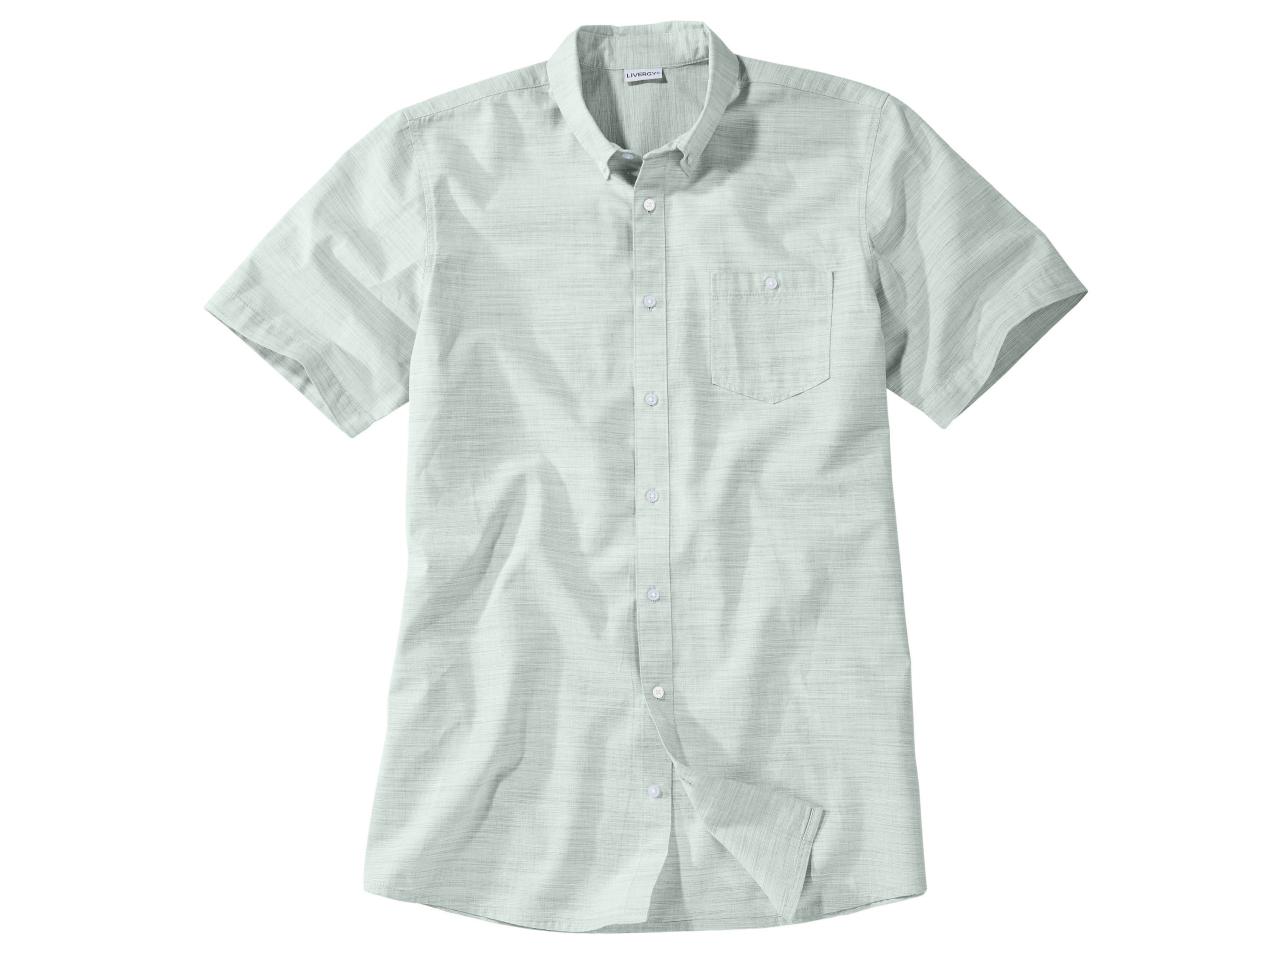 Men's Short-Sleeved Shirt